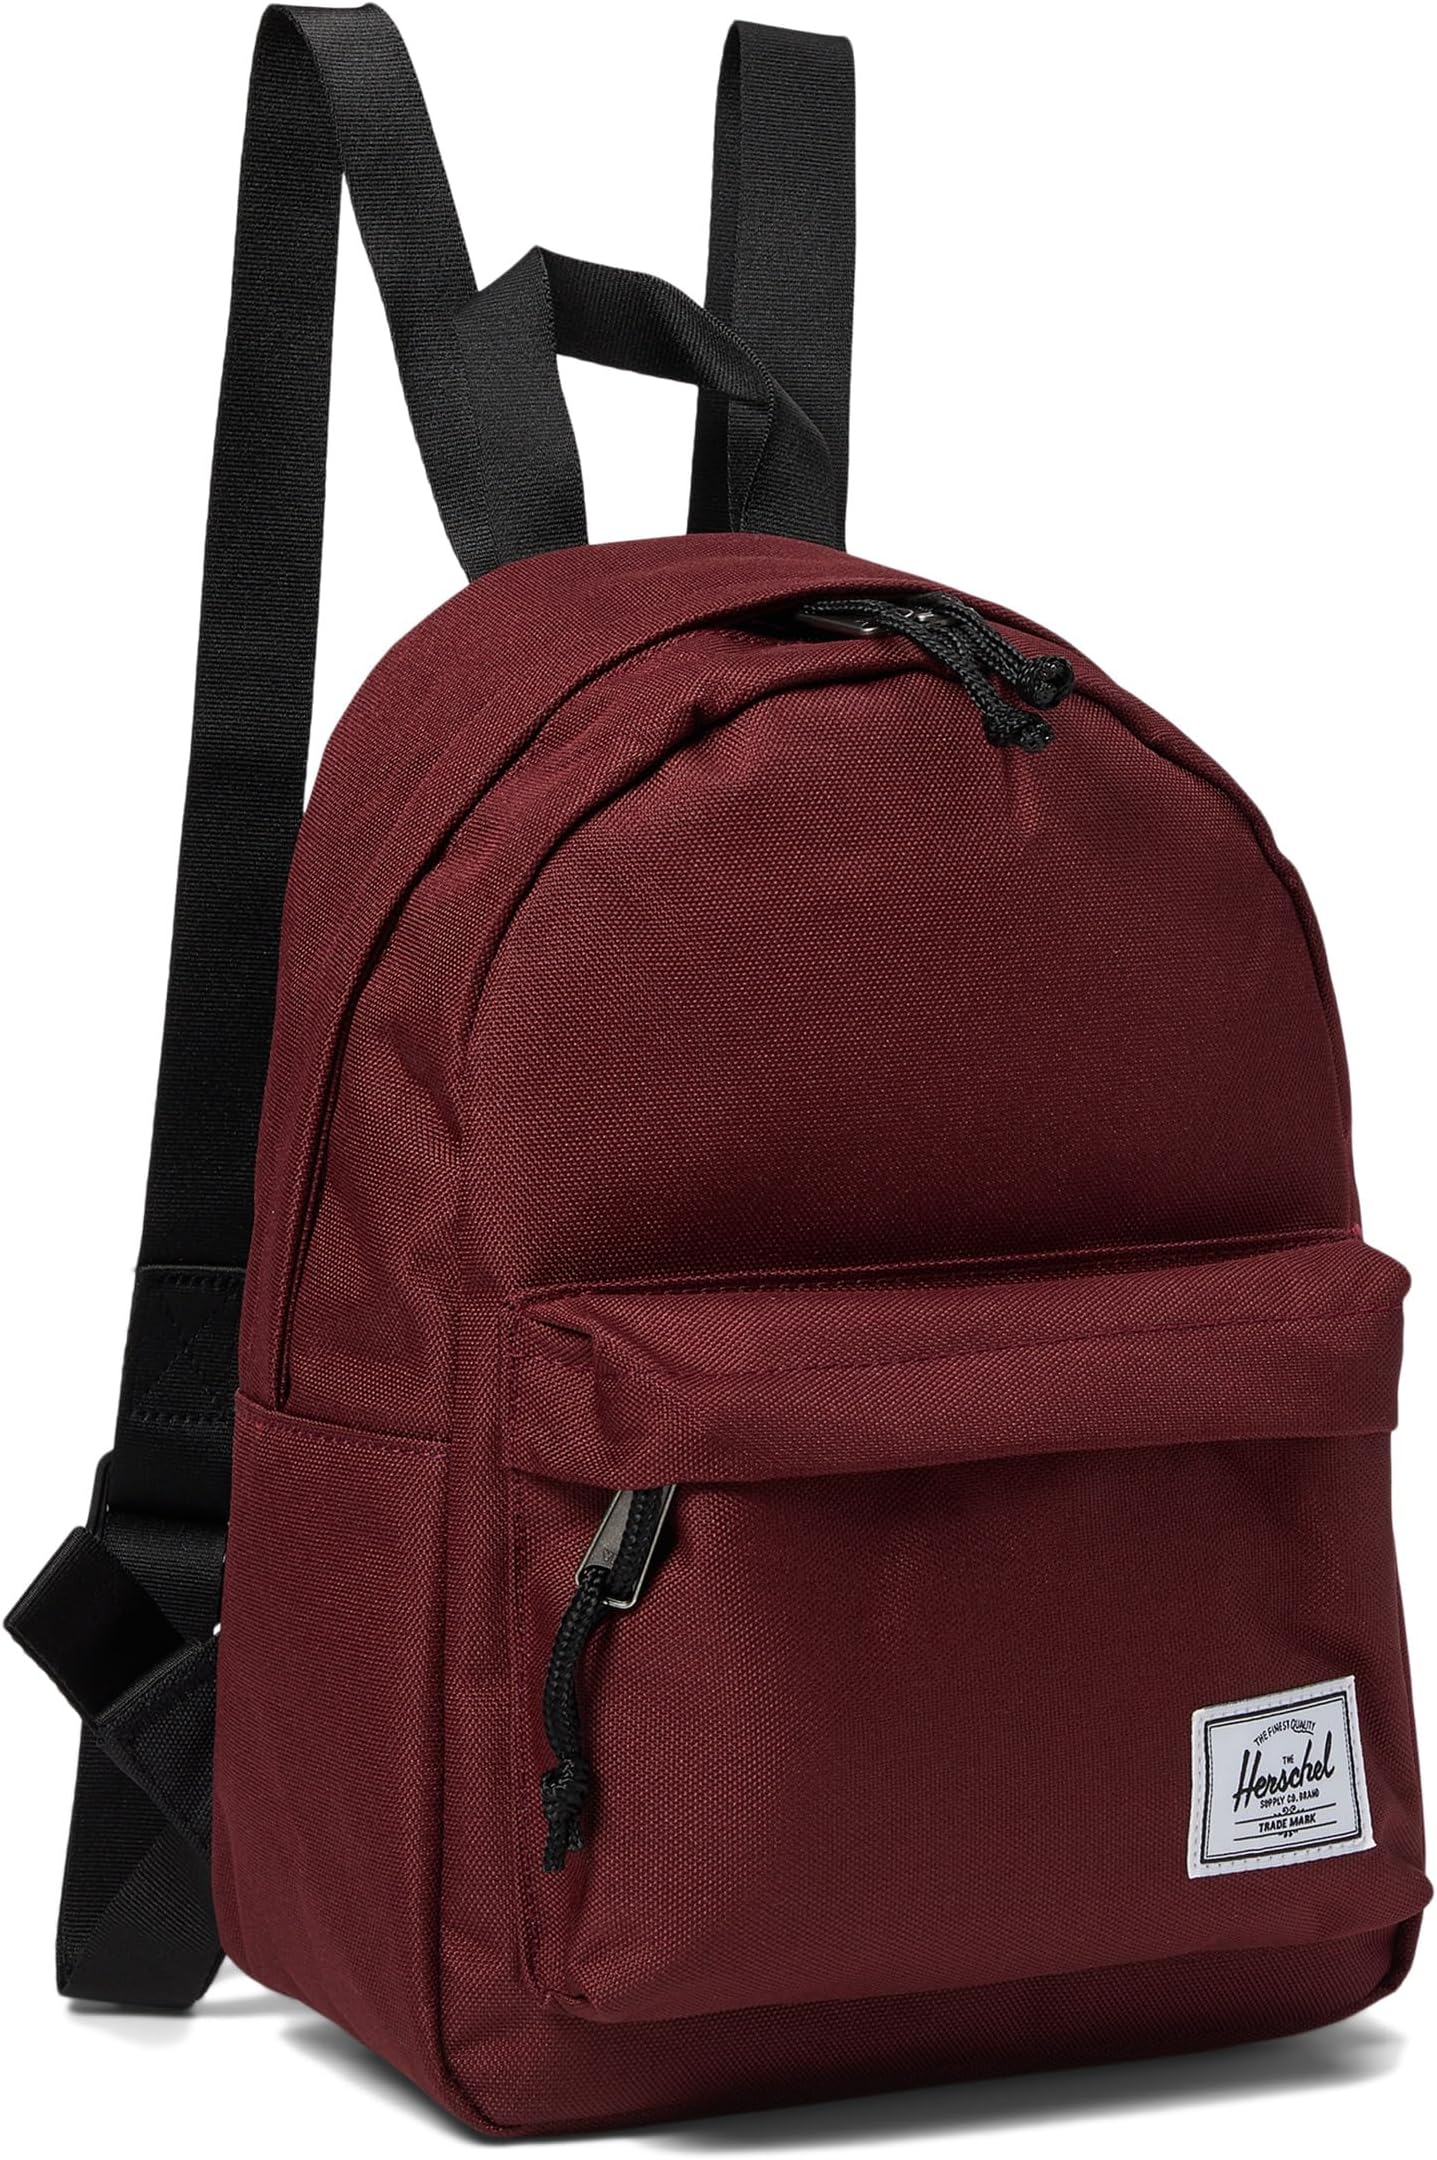 рюкзак herschel supply co classic xl цвет port Рюкзак Classic Mini Backpack Herschel Supply Co., цвет Port